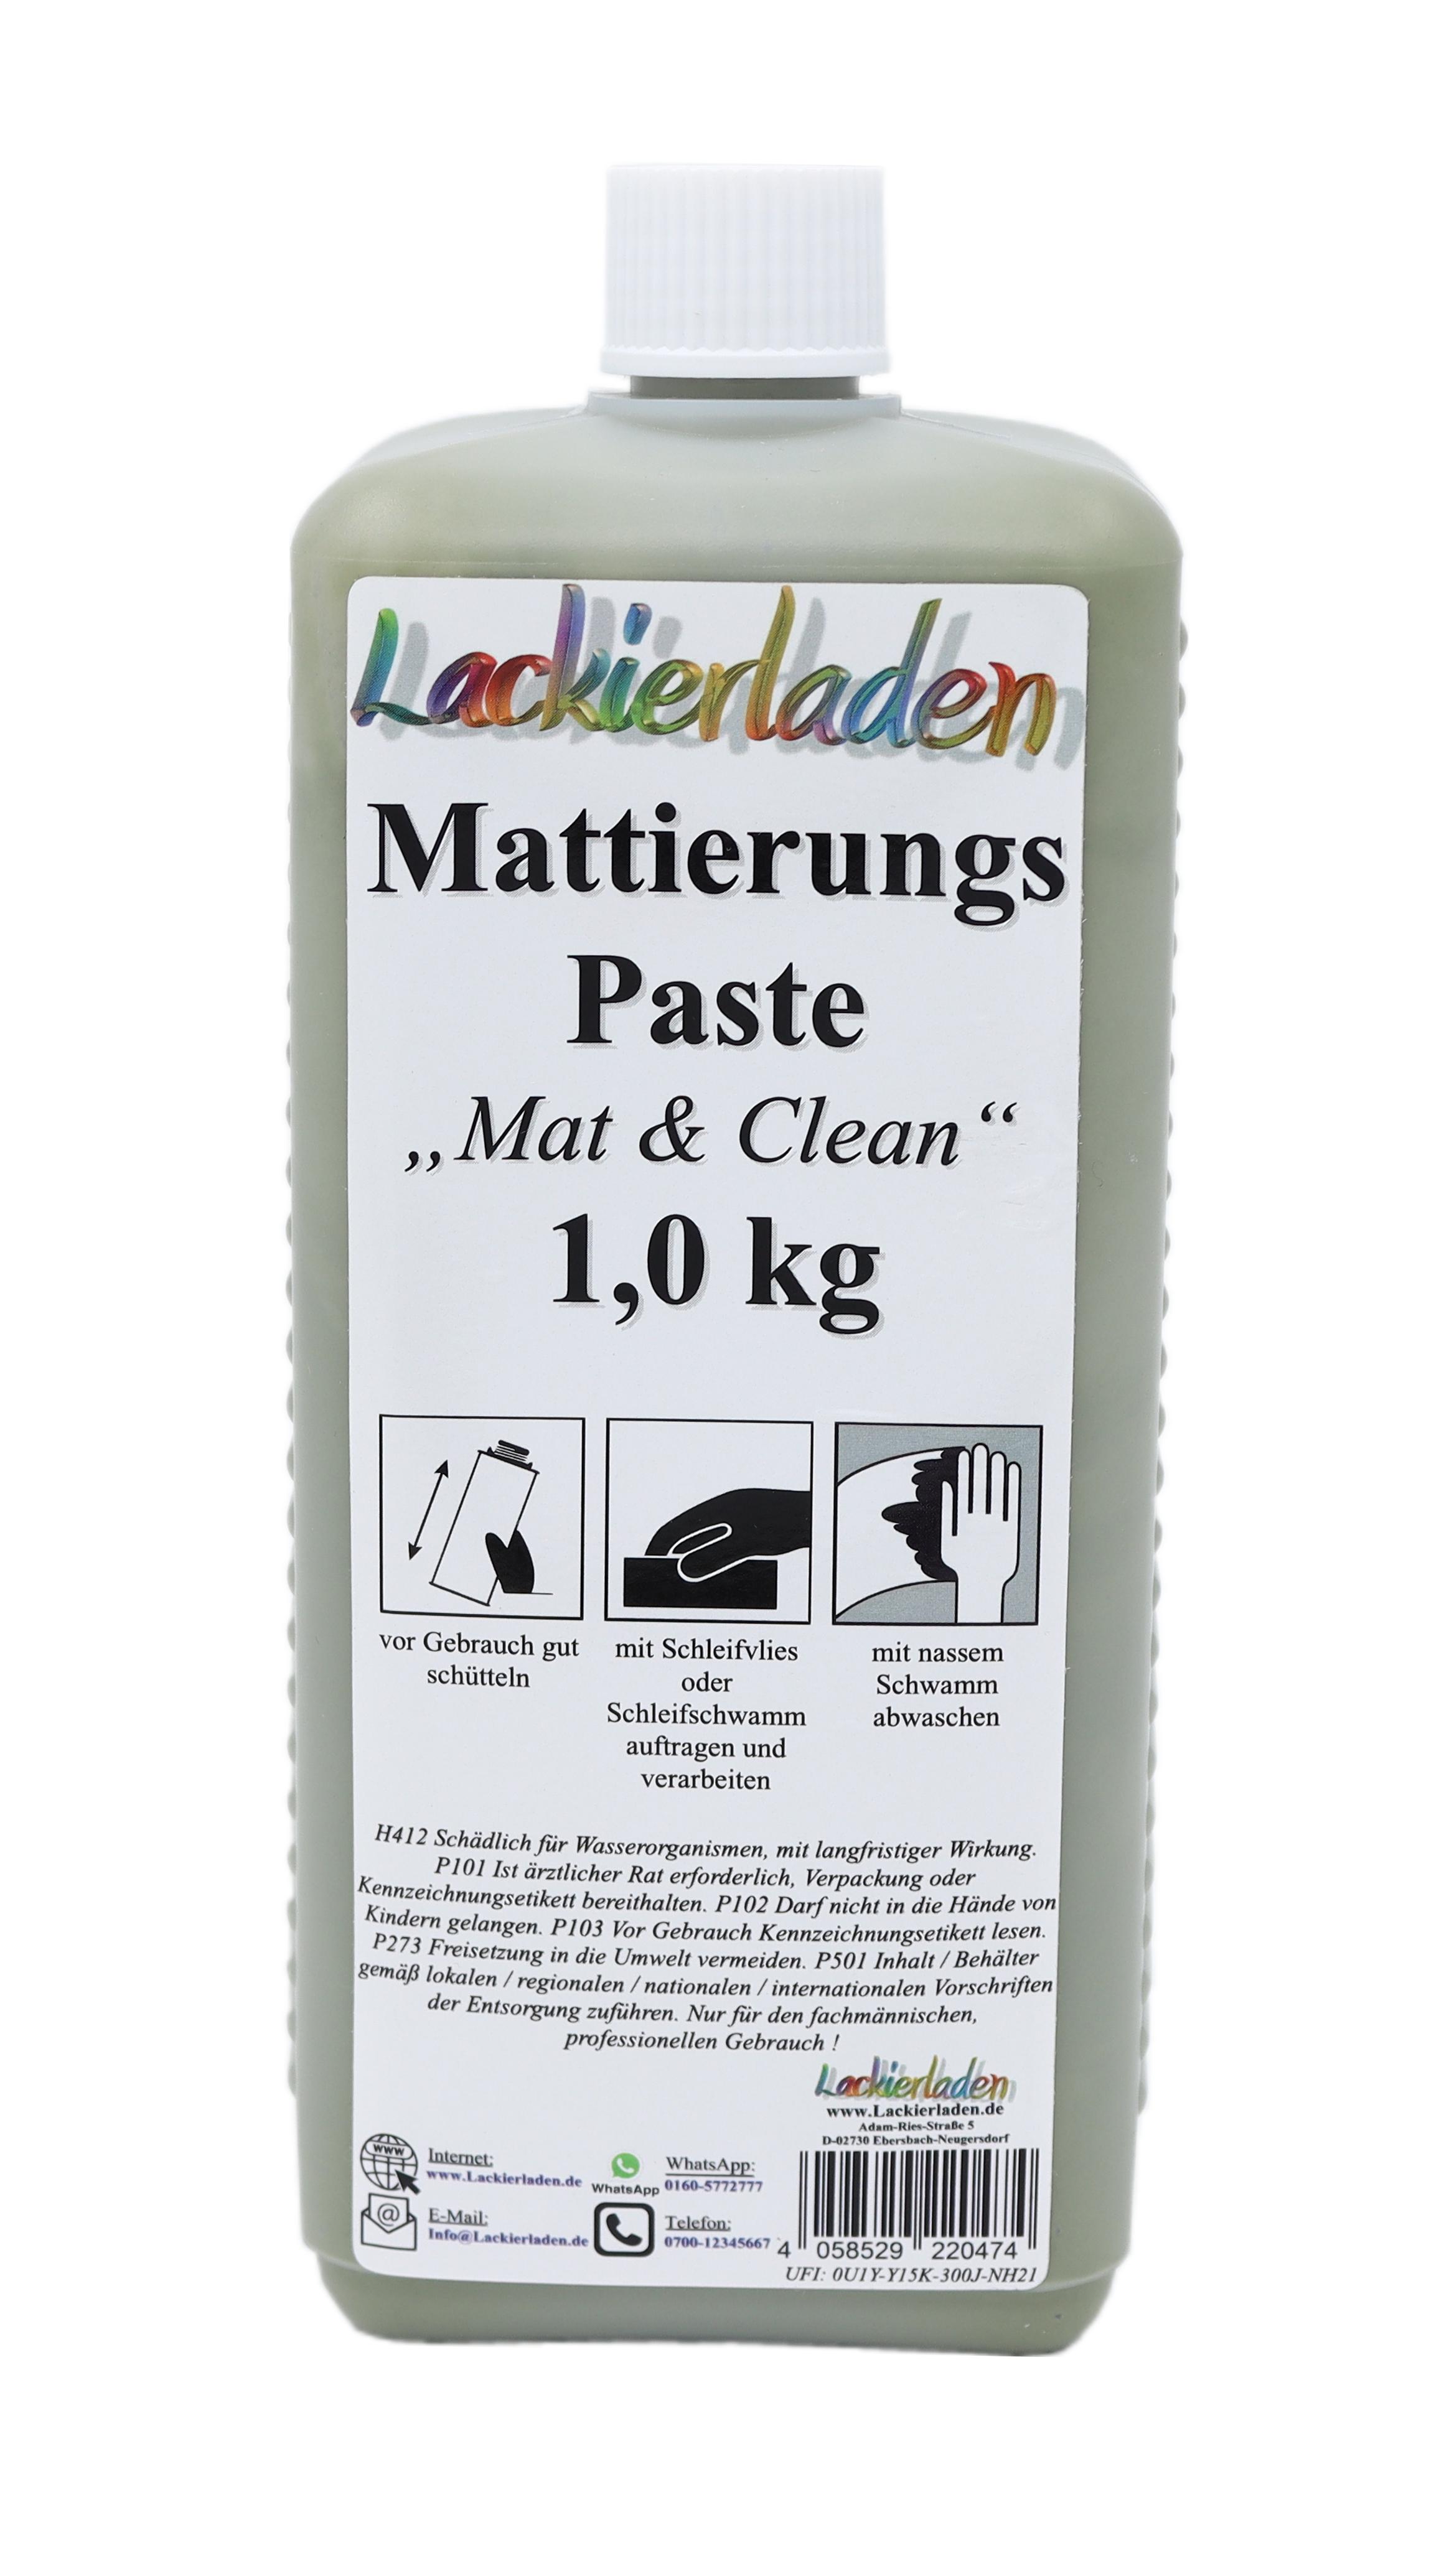 Mattierungspaste „Mat & Clean“ 1,0 kg | Vorreiniger zum mattieren 1kg 1000 g